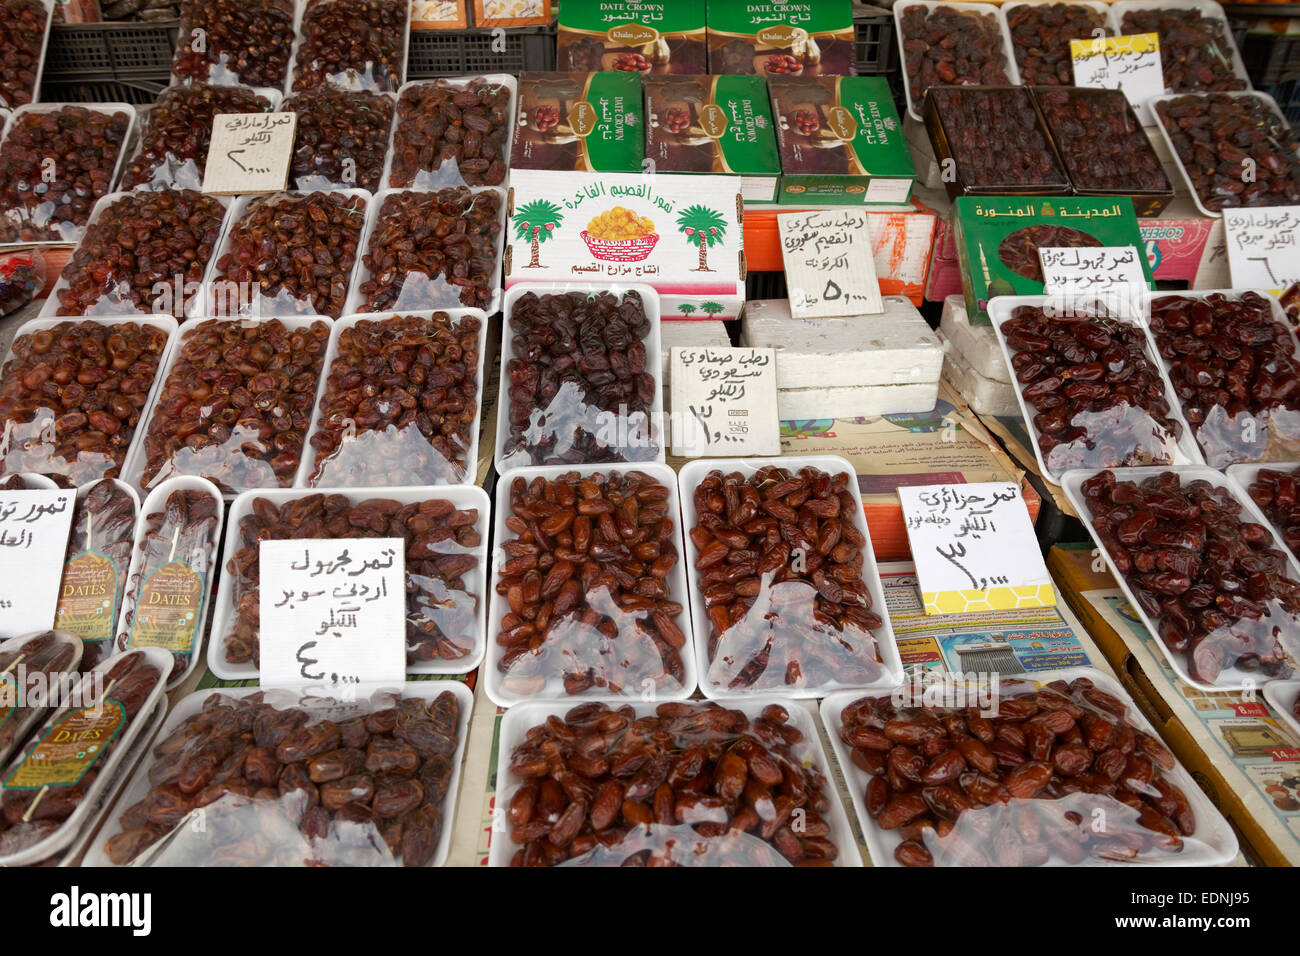 Date in vassoi in polistirolo espanso, mercato, Amman, Giordania Foto Stock